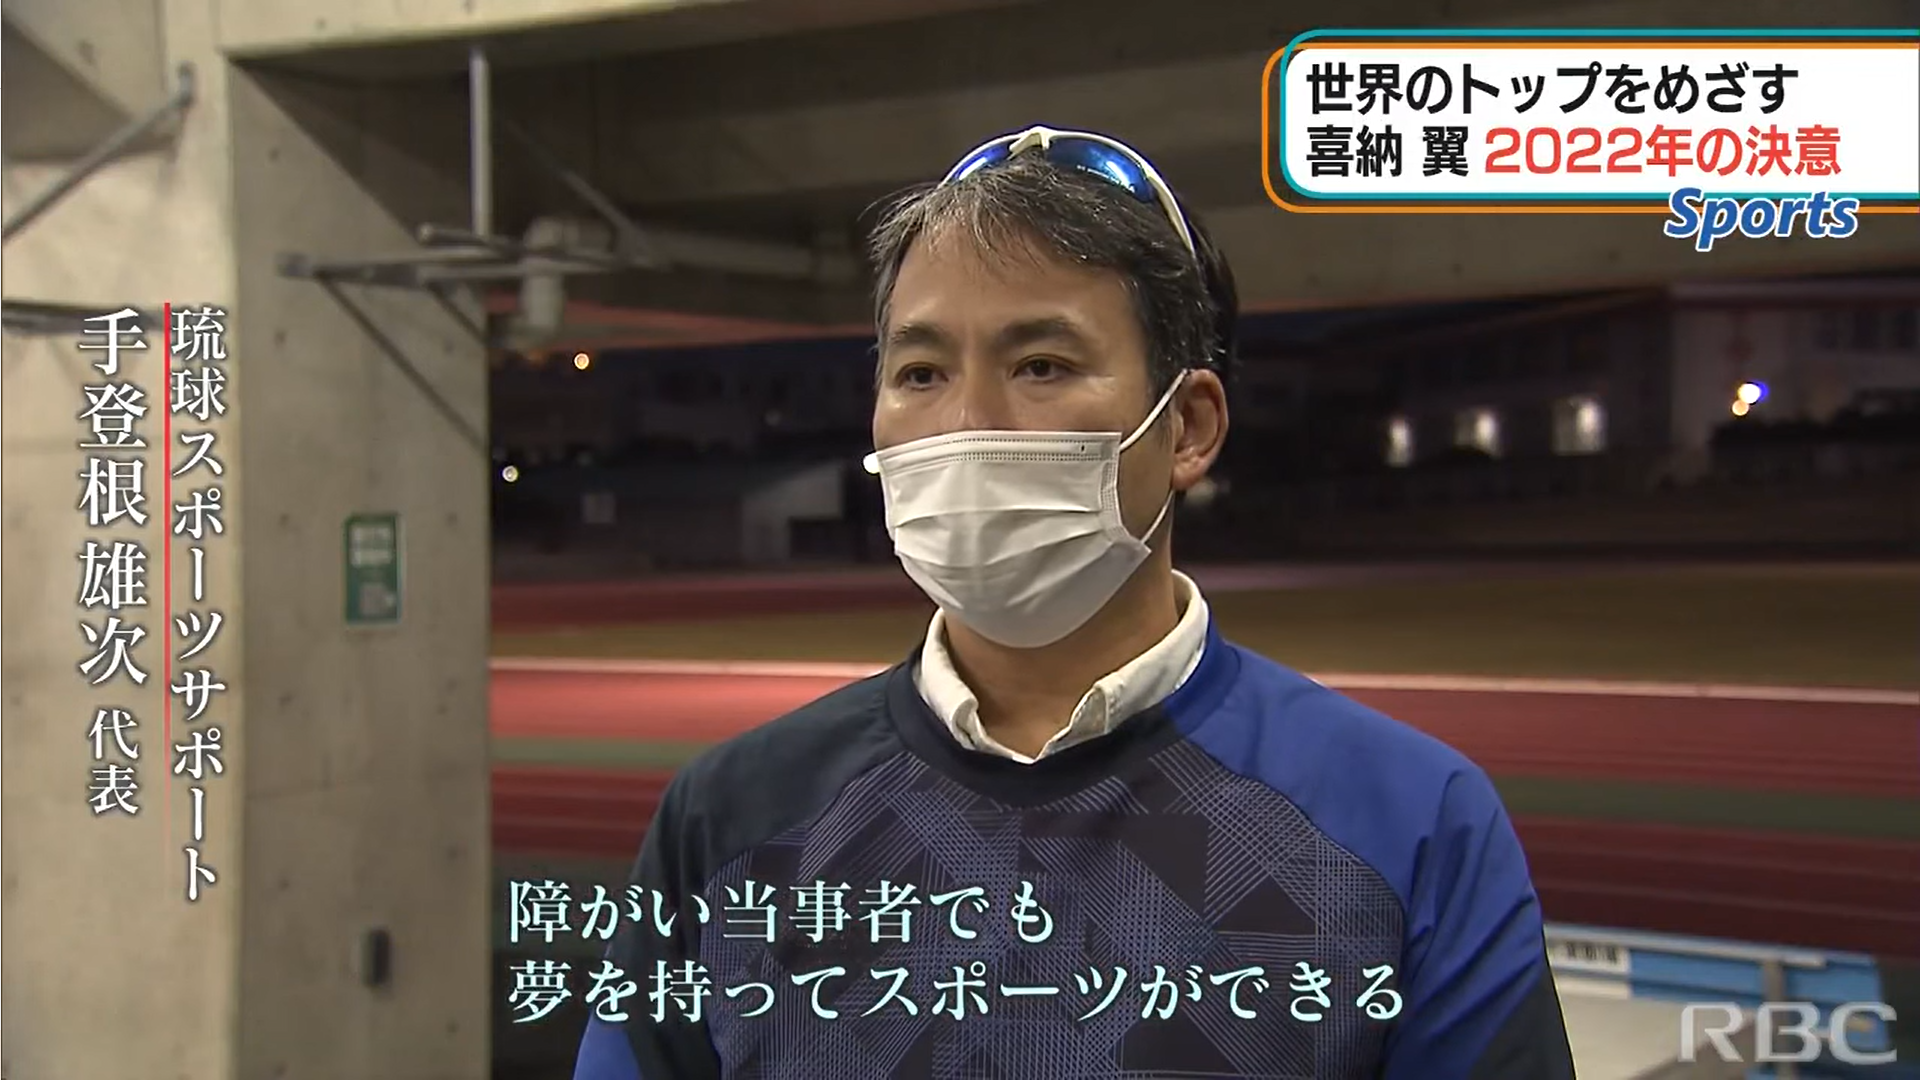 手登根さんの運営する『琉球スポーツサポート』が、RBC NEWSに特集されました！